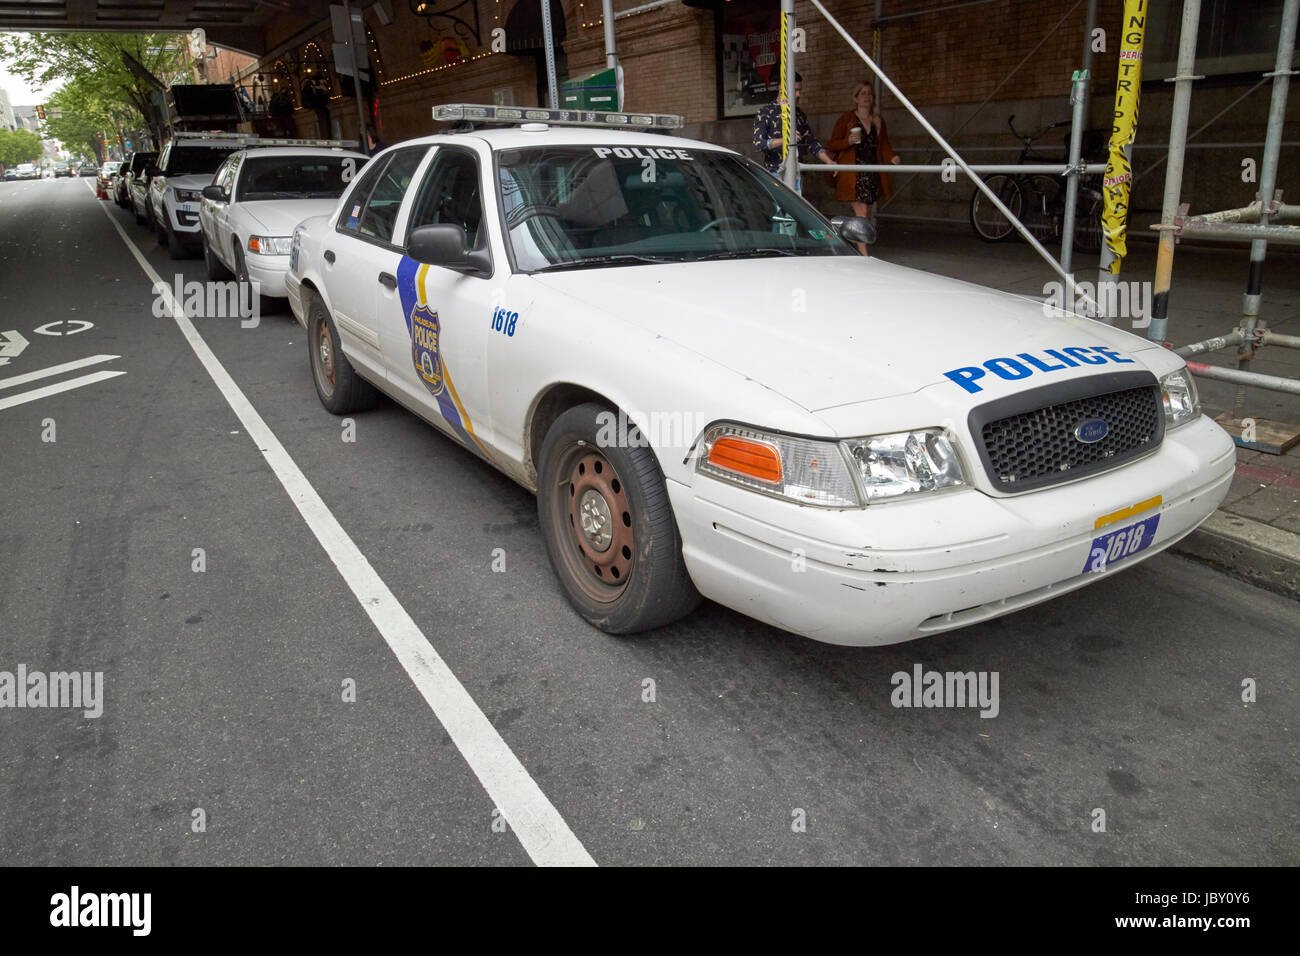 La polizia di Filadelfia ford crown vic cruiser patrol automobile veicolo USA Foto Stock